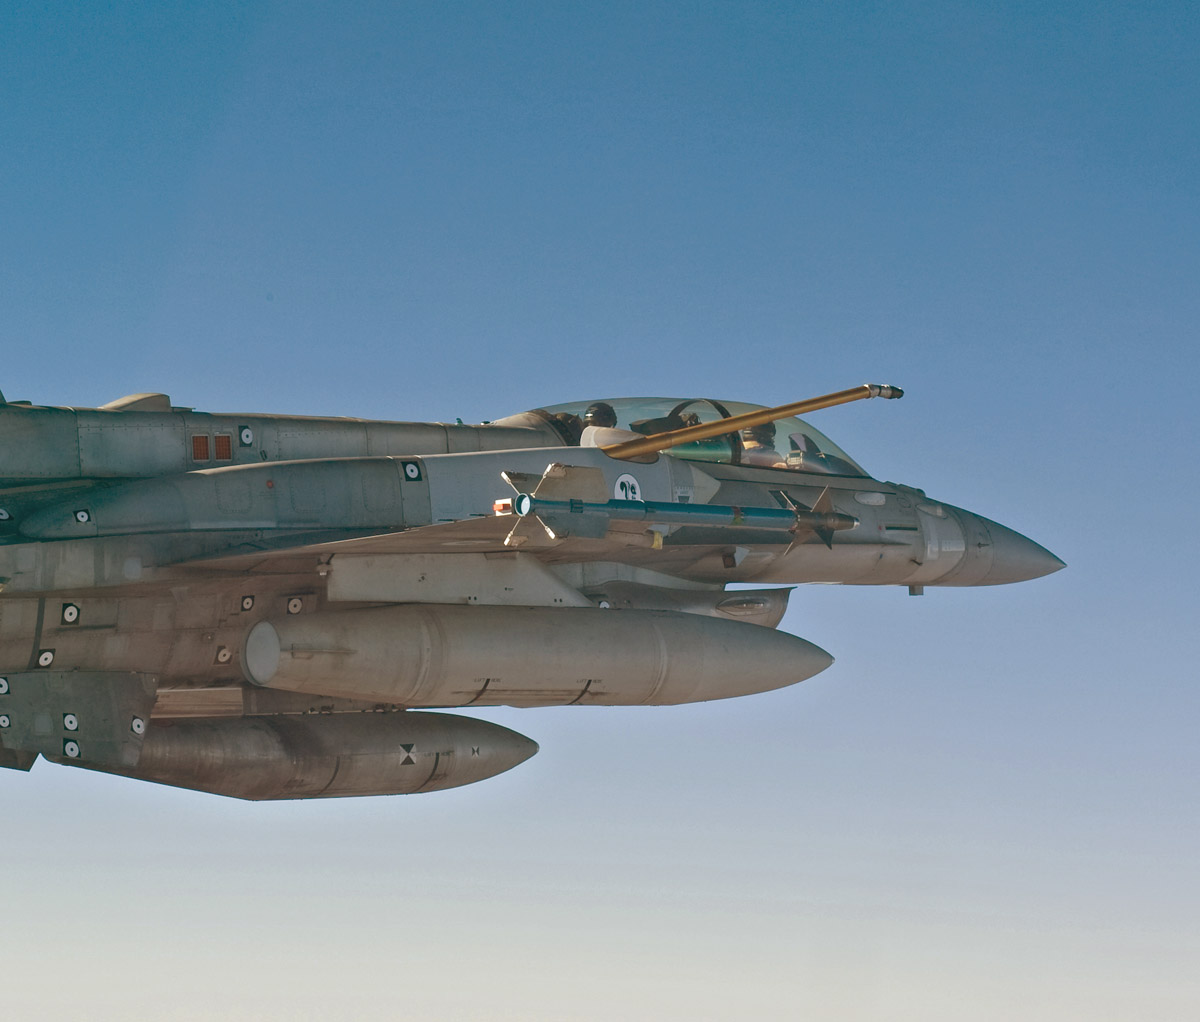 ايهما افضل Images+from+drogue-probe+style+air+refueling+system+testing+on+F-16.